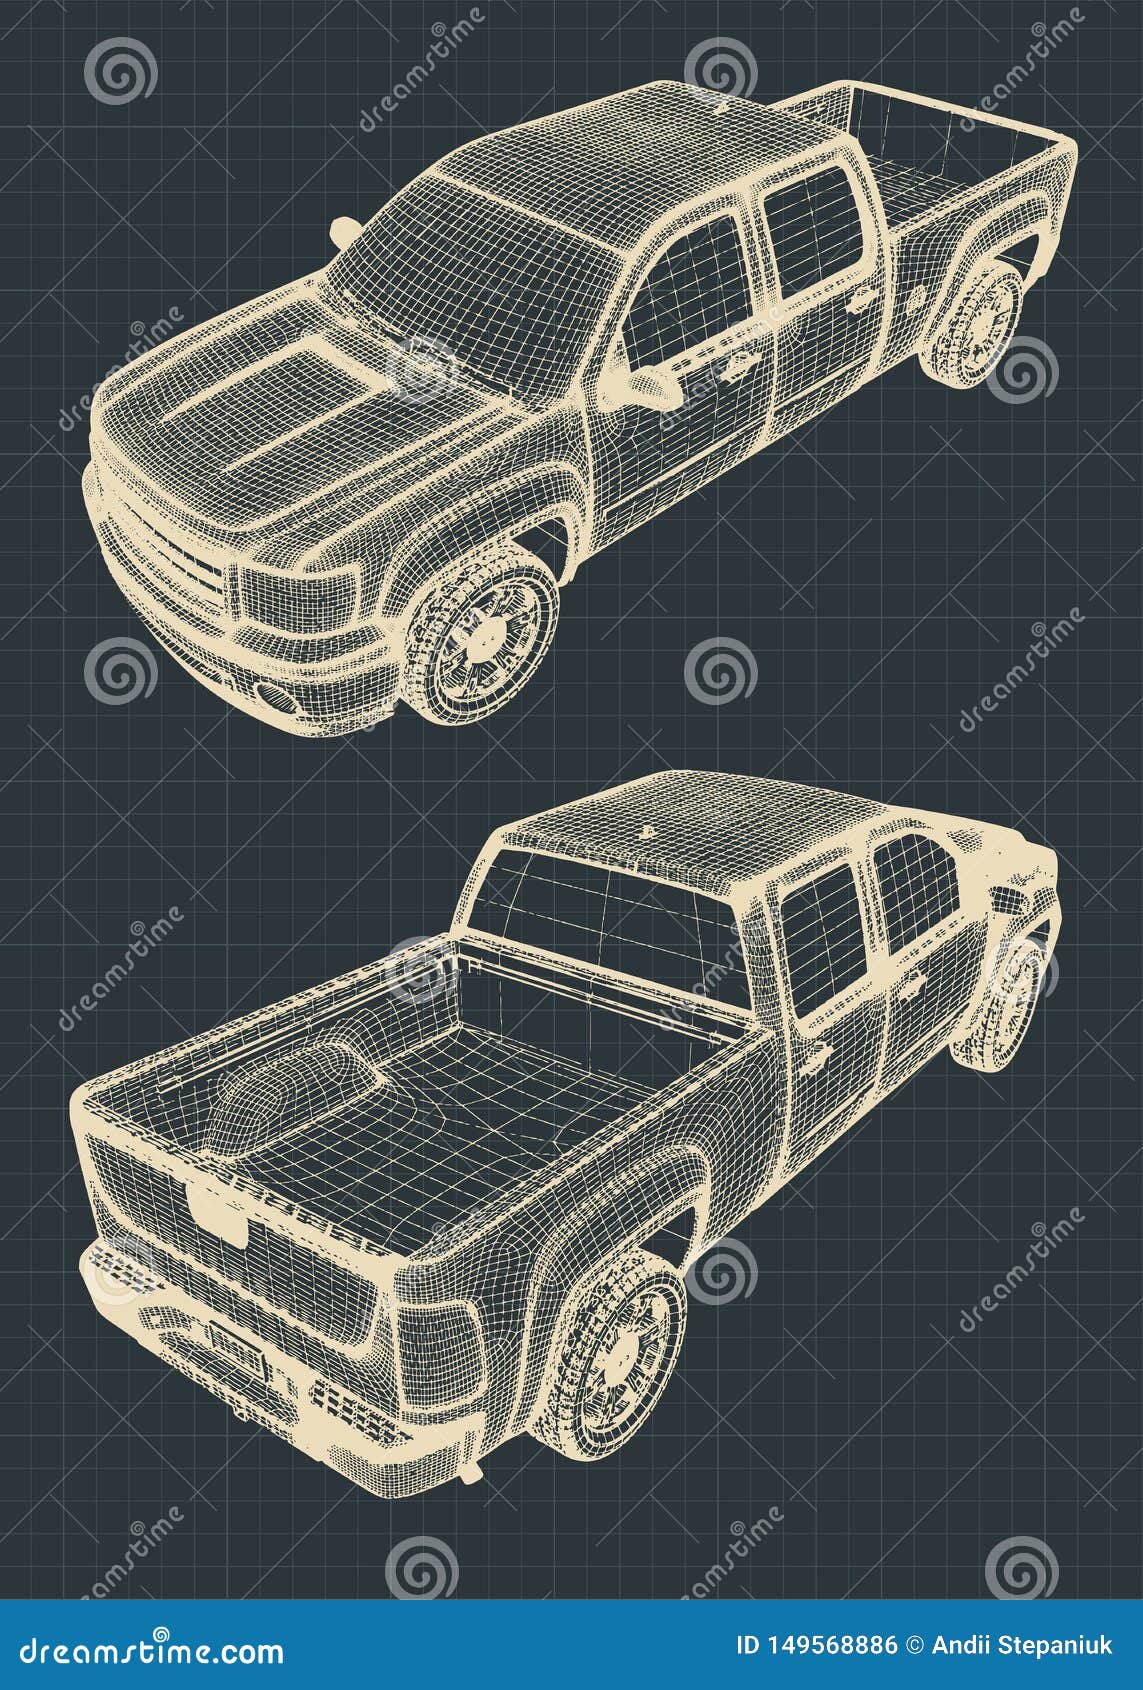 Dibujo De Una Camioneta Pickup Ilustración del Vector - Ilustración de  modelos, objeto: 149568886